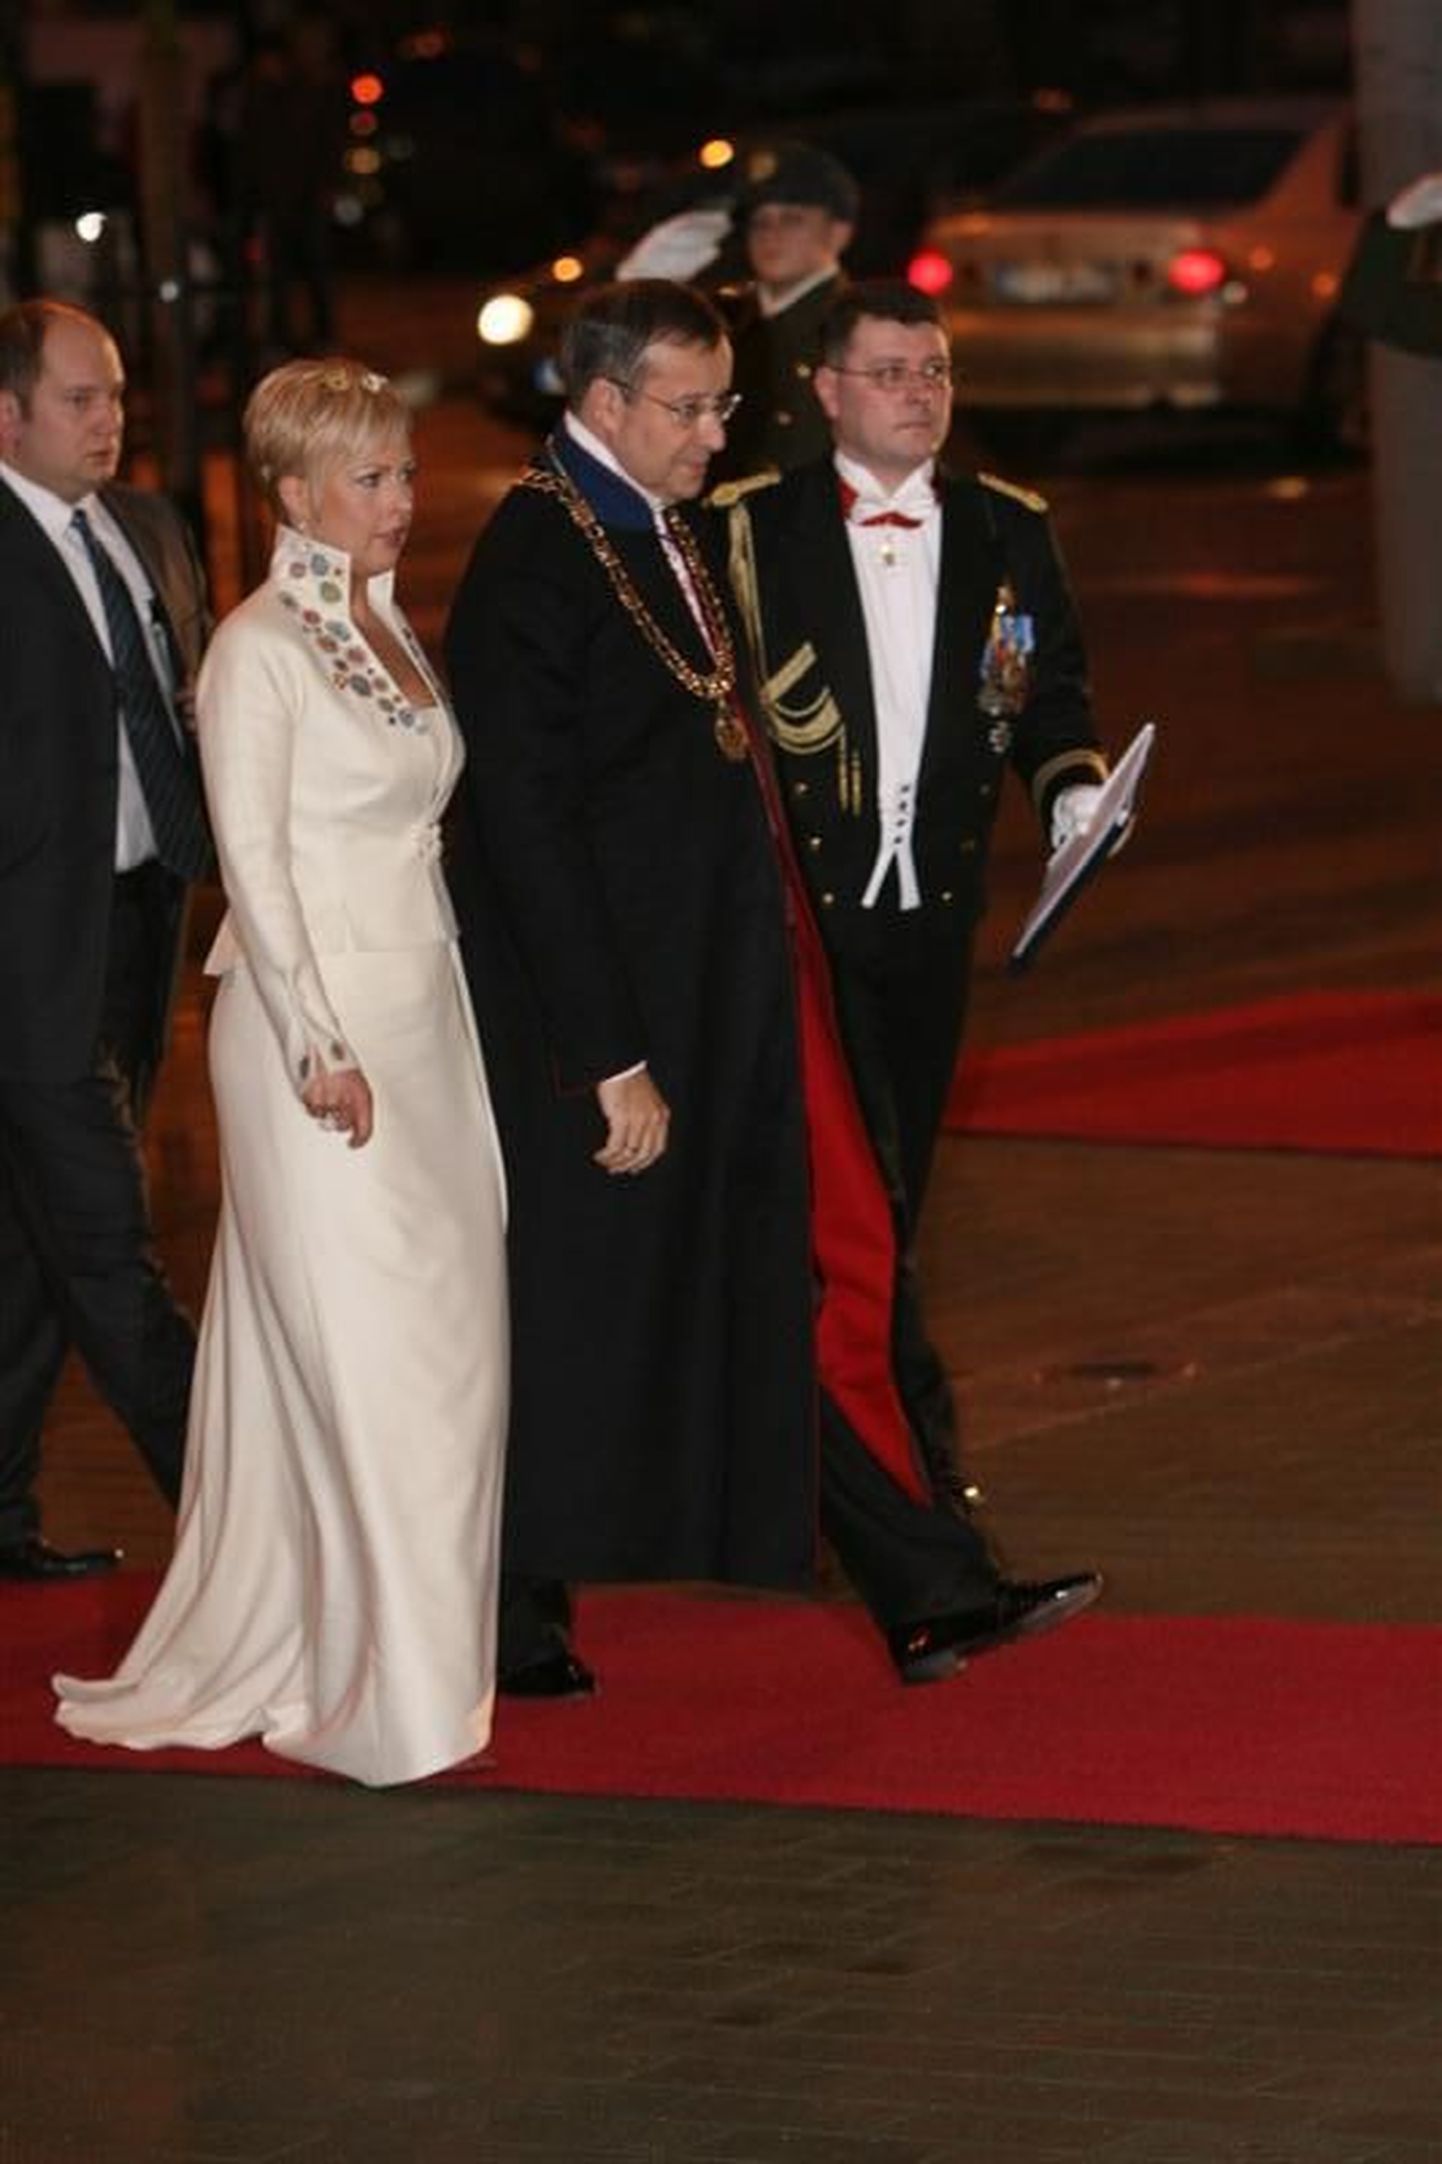 Proua Evelin Ilves ja President Toomas Hendrik Ilves